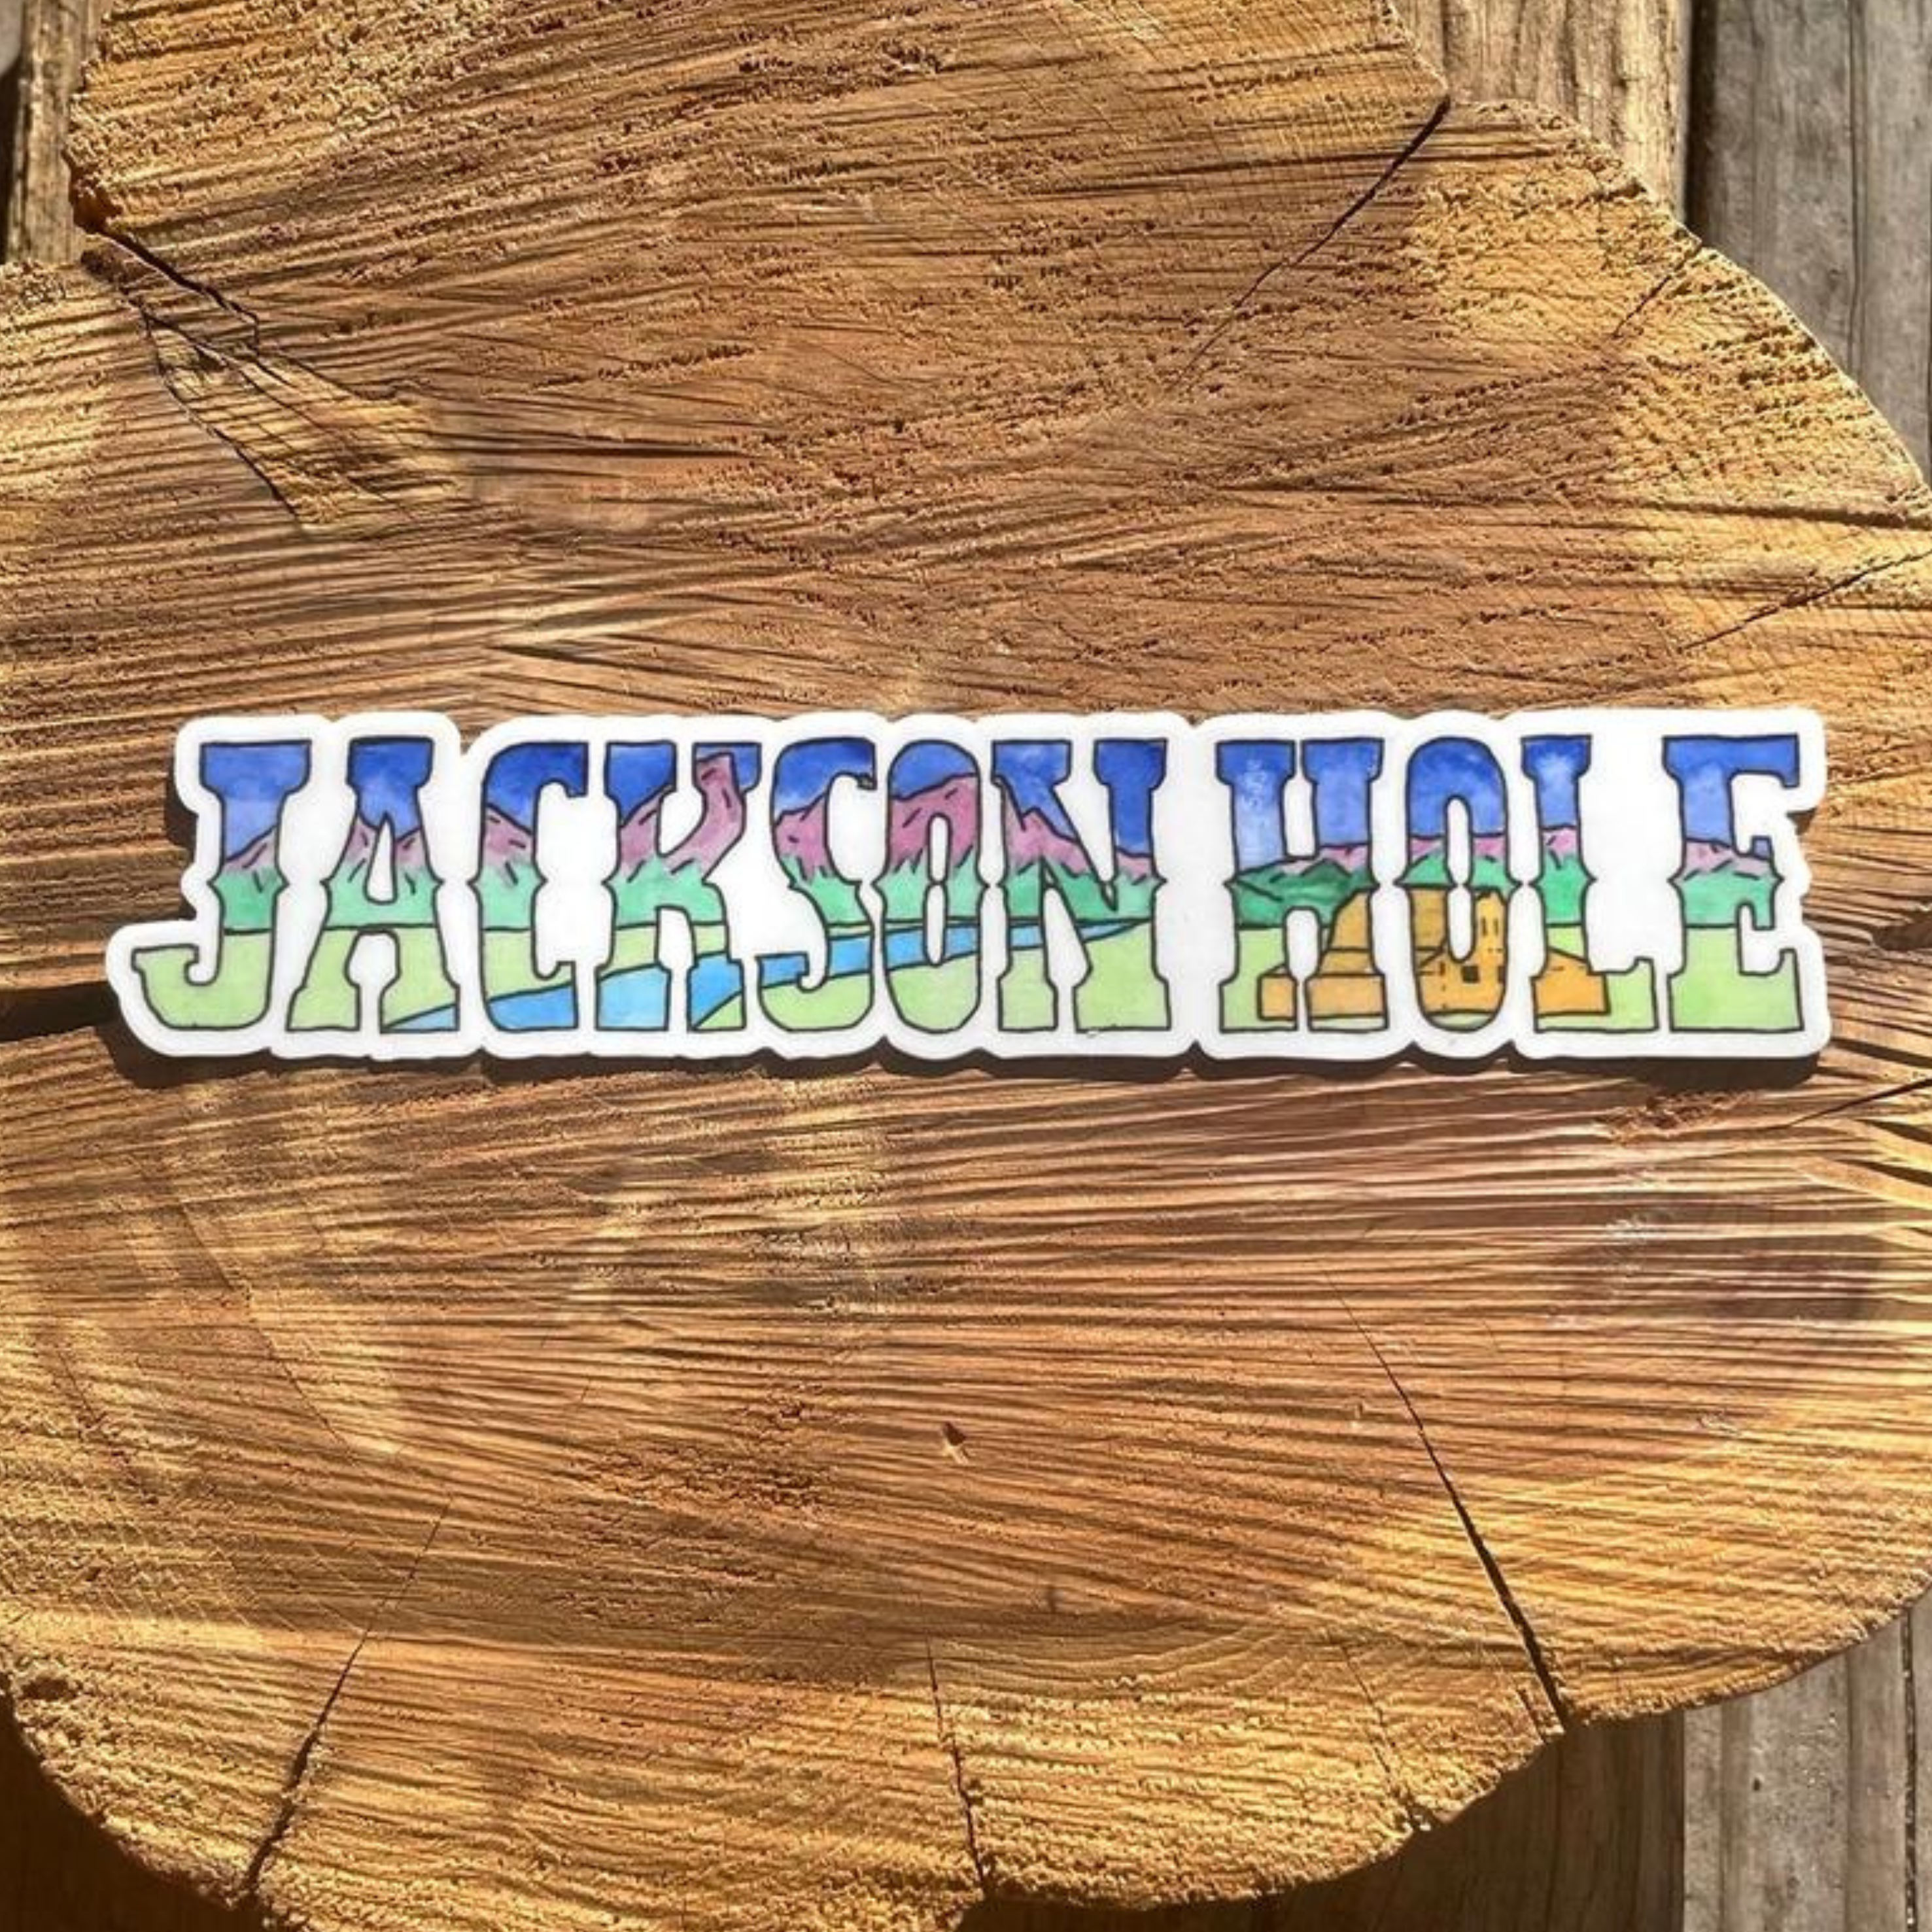 Jackson Hole Landscape Sticker